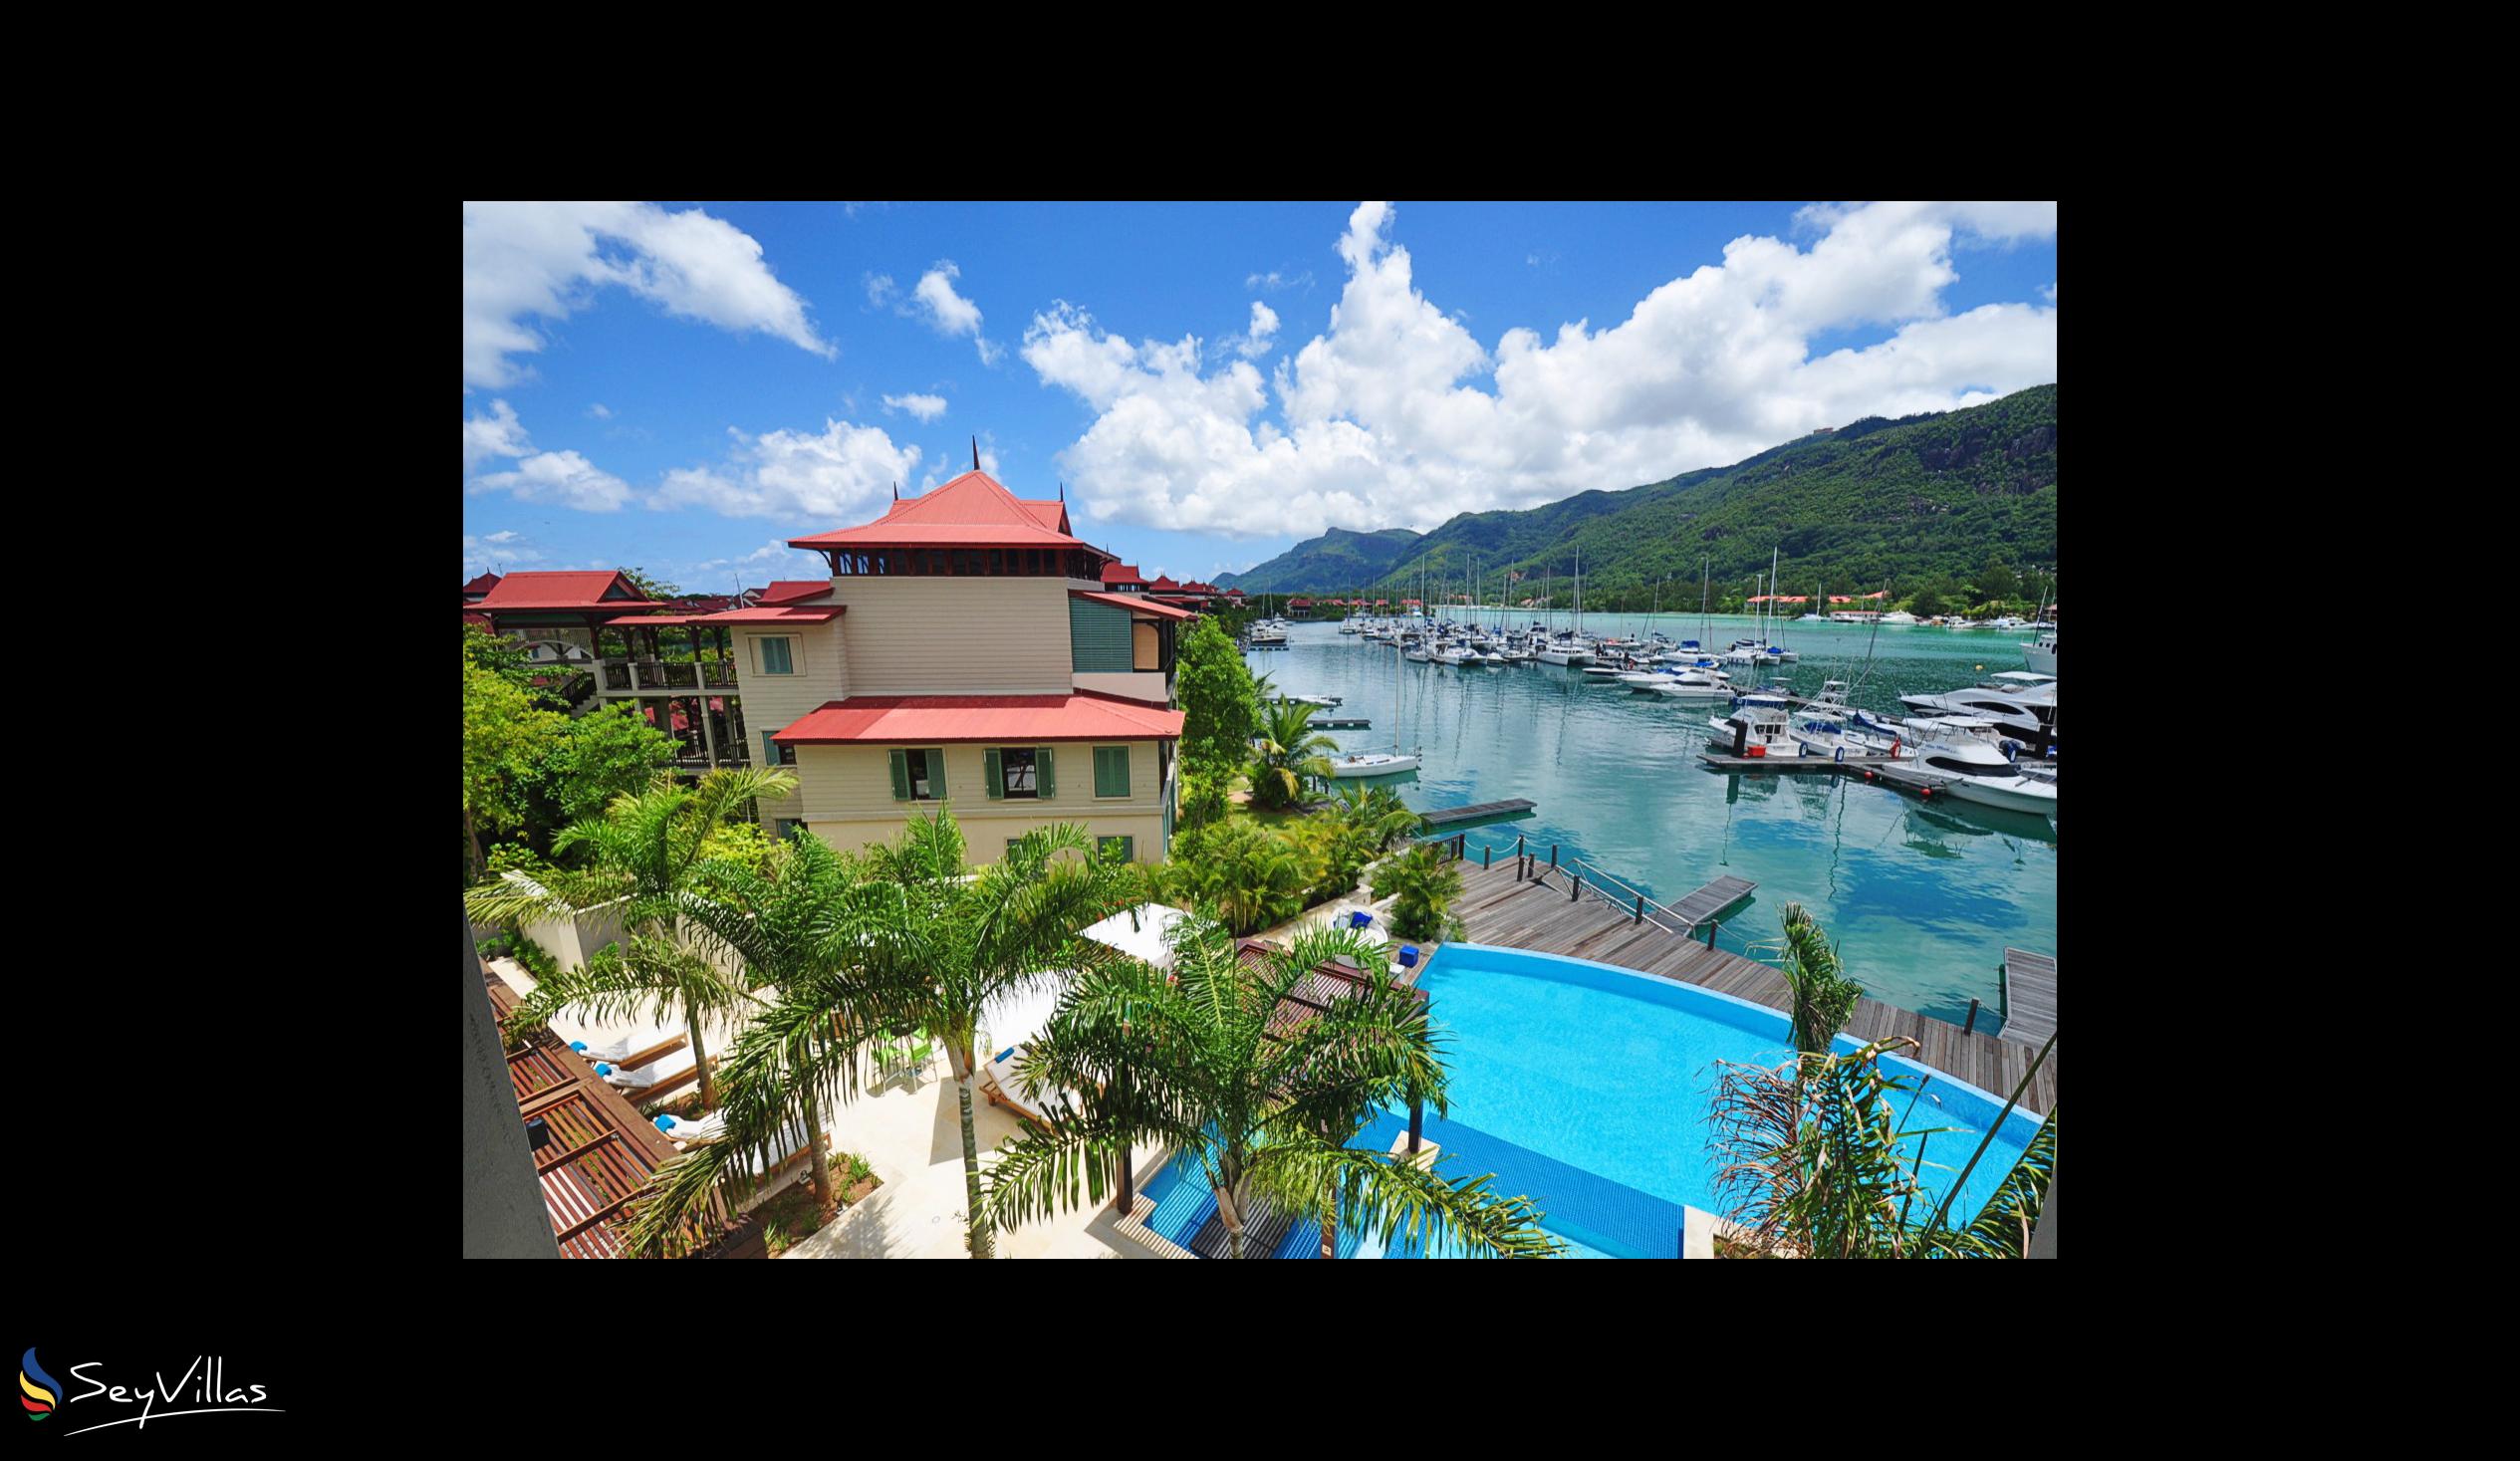 Photo 1: Eden Bleu Hotel - Outdoor area - Mahé (Seychelles)